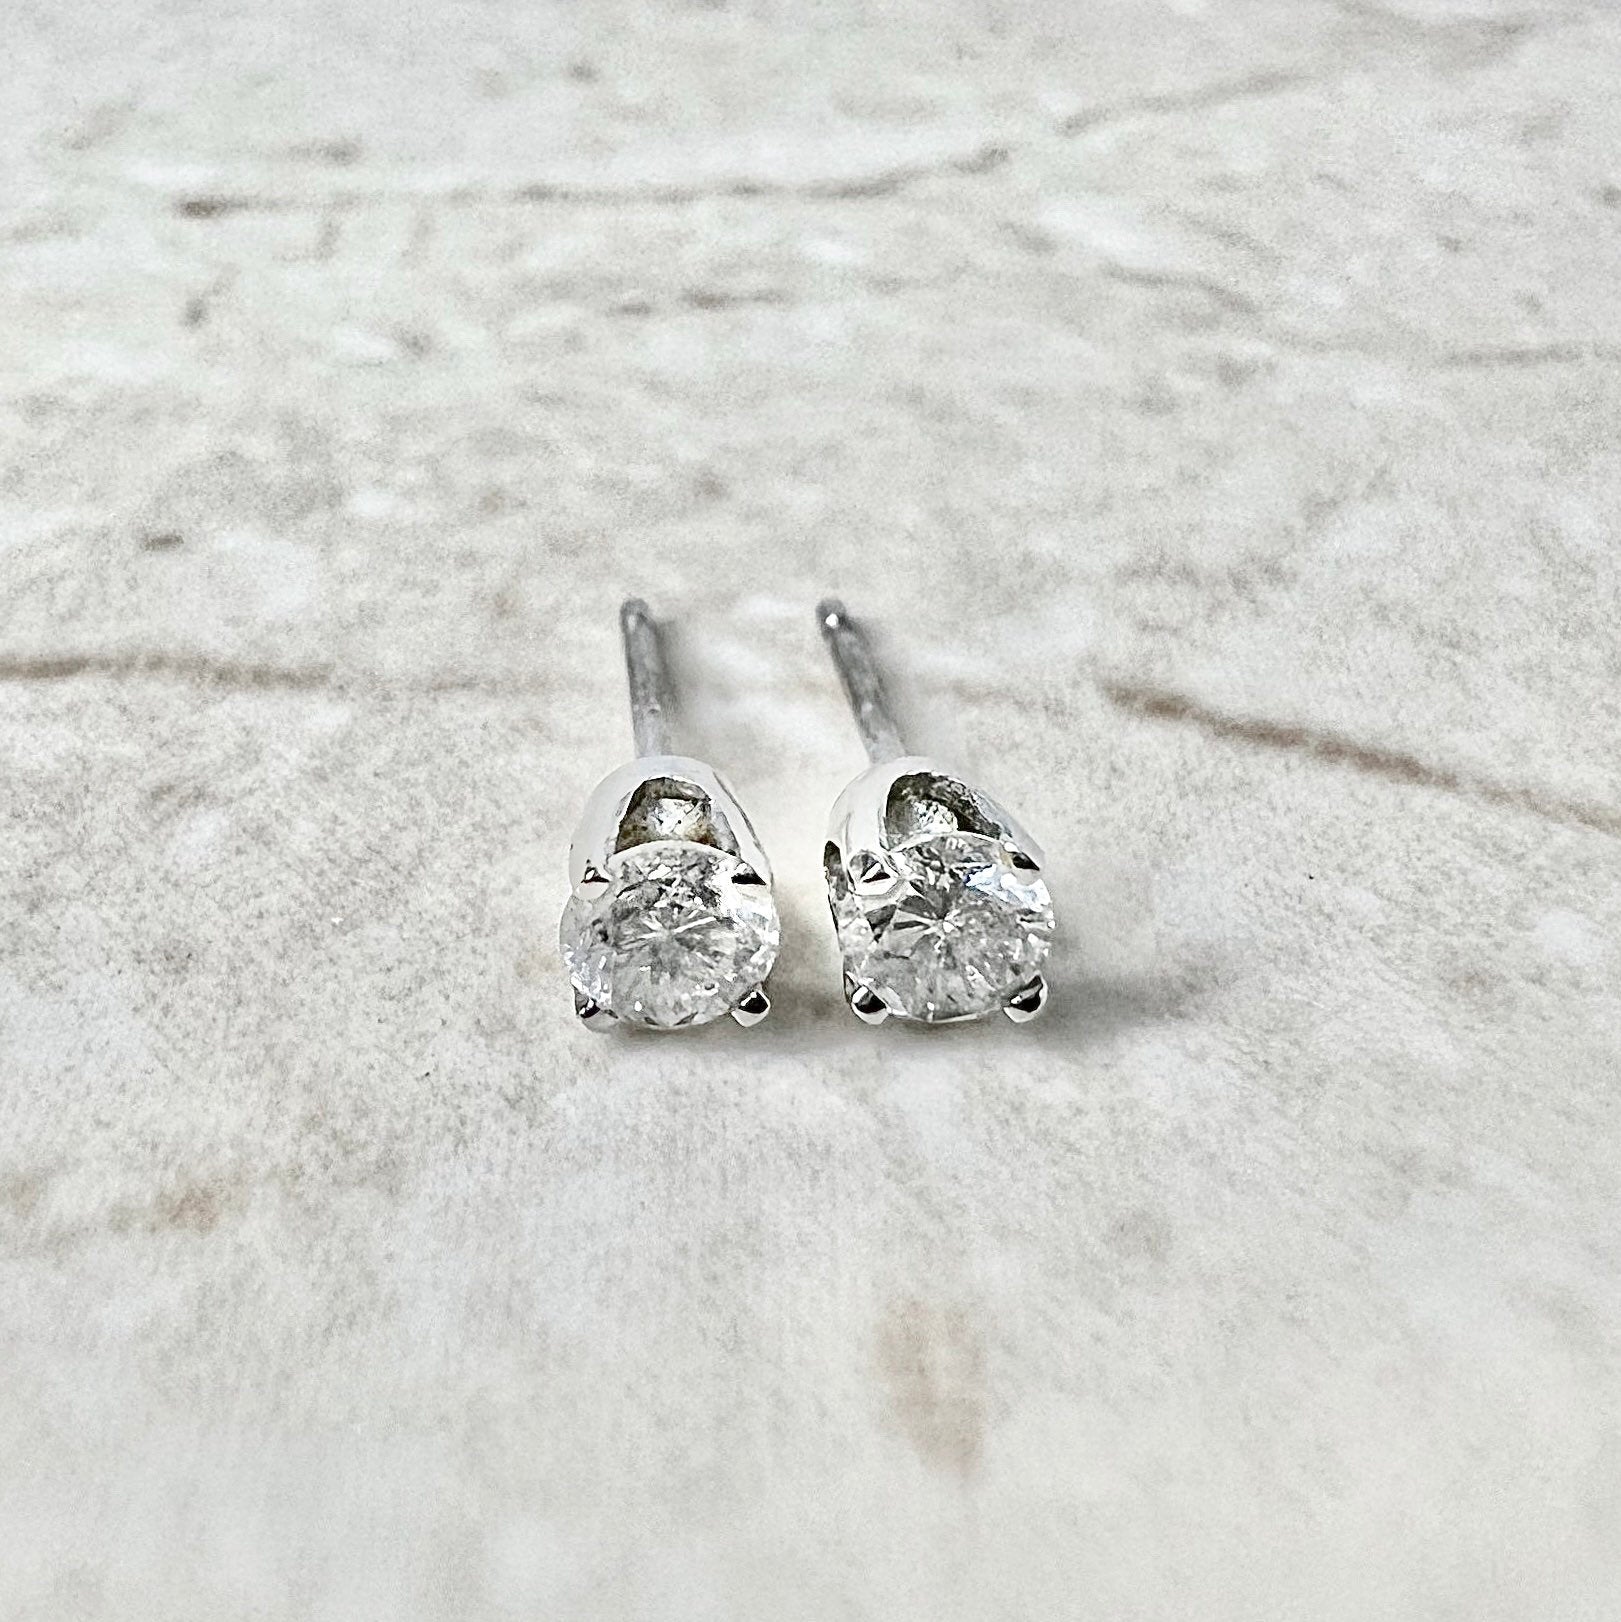 Classic 14K Diamond Stud Earrings 0.30 CTTW - 14 Karat White Gold Diamond Studs - 4 Prong Diamond Studs - Birthday Gift - Best Gift For Her